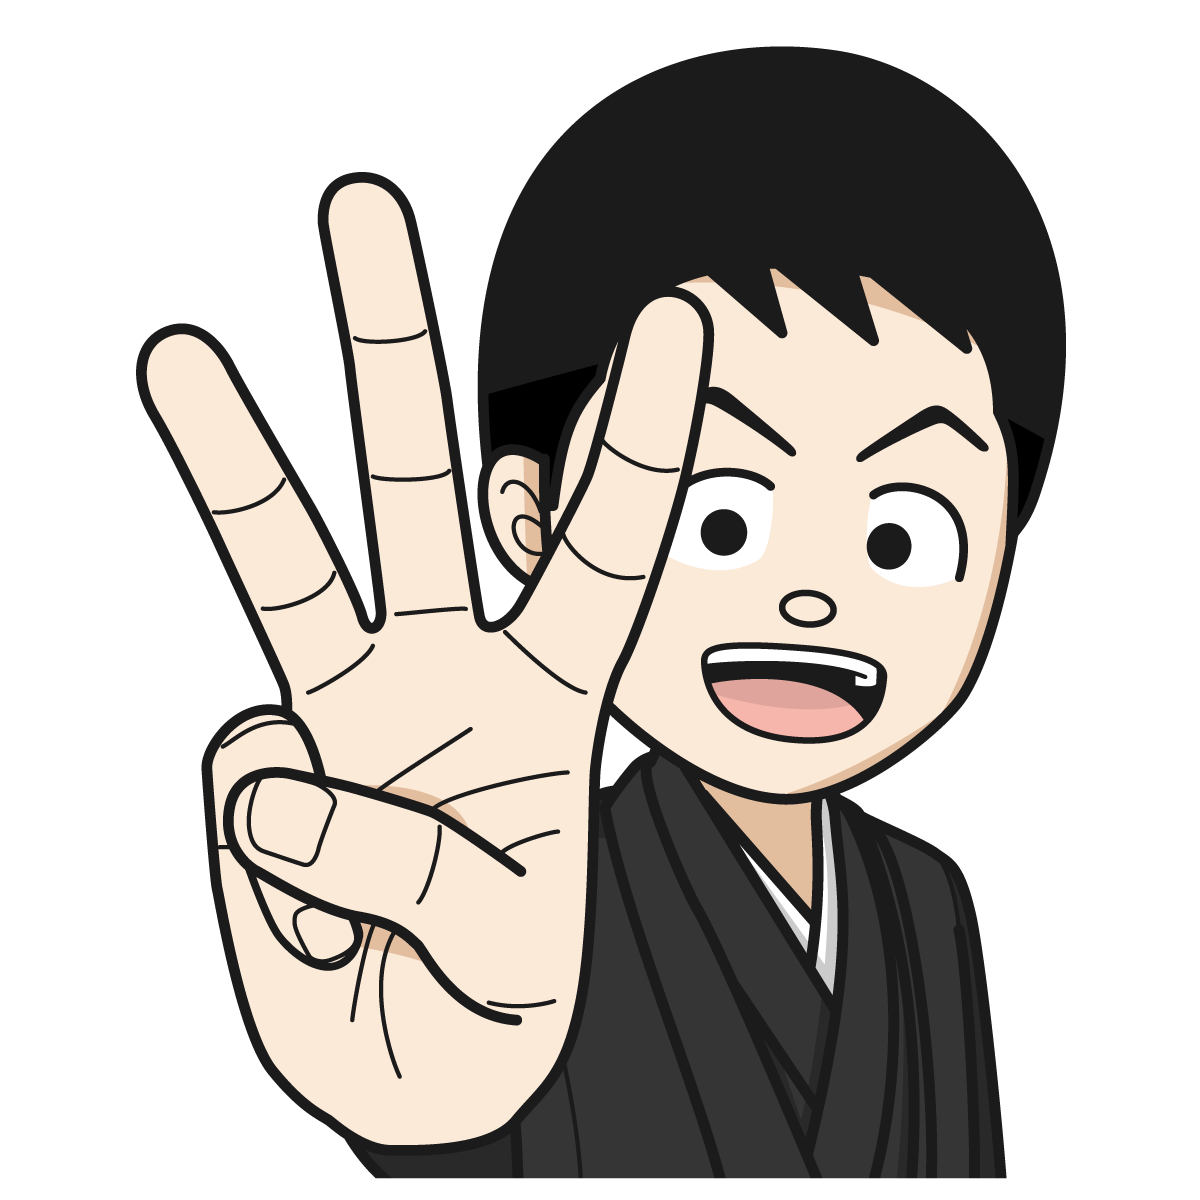 指で 3 を作る袴を着た男性18 Hand イラスト Mido Kichi